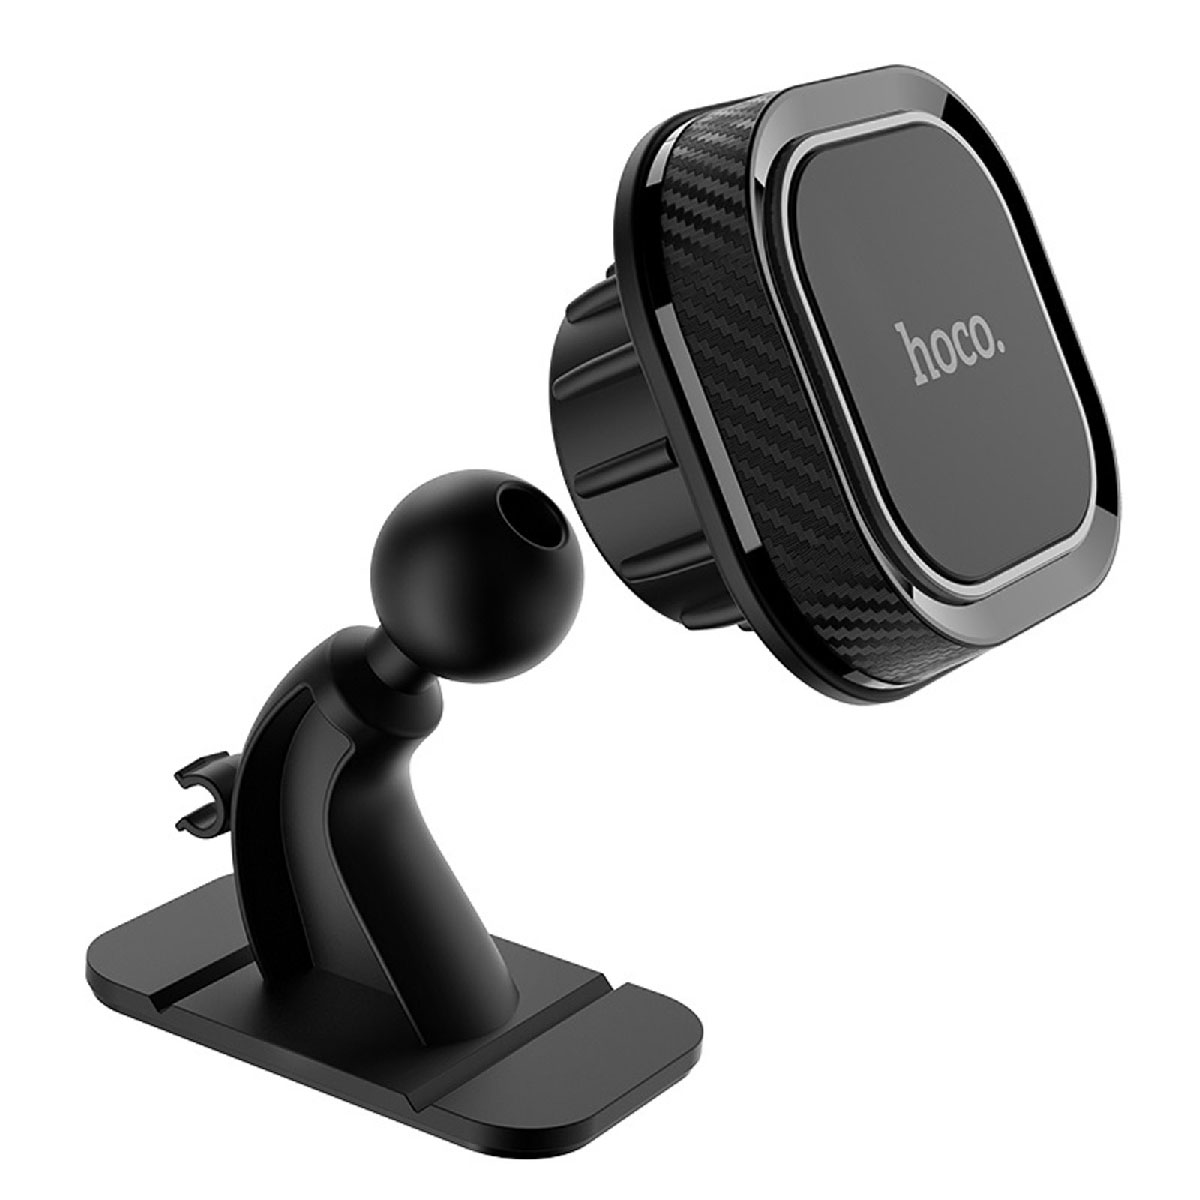 HOCO CA53 Intelligent автомобильный магнитный держатель телефона для приборной панели, цвет черный.